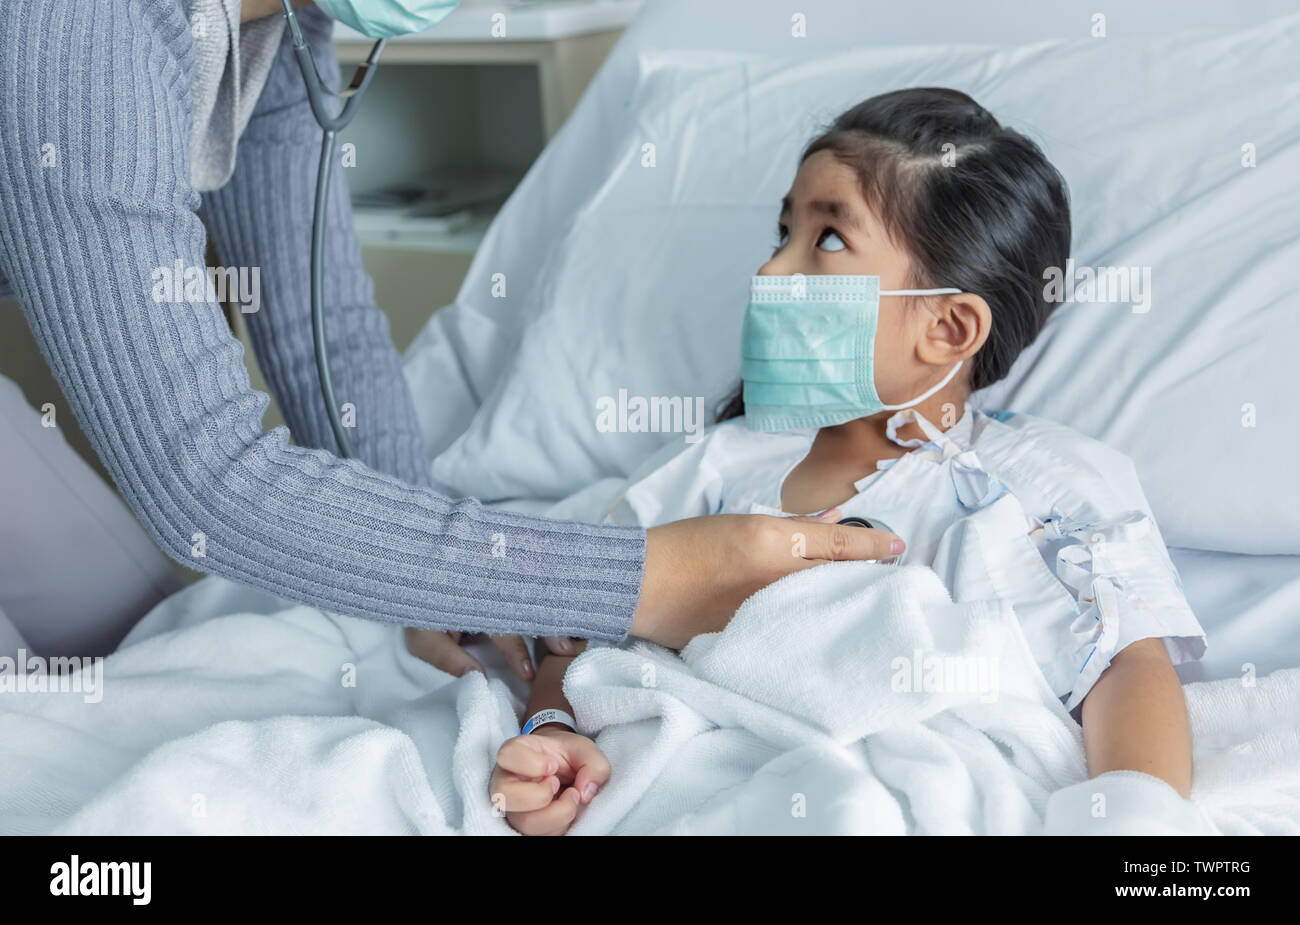 Arzt heilen oder Influenza A-Virus H1N1-Grippe asiatische Kid am Krankenbett. Medizin virus Situation beim Kind hat hohes Fieber. Arzt Stethoskop zu hören Stockfoto